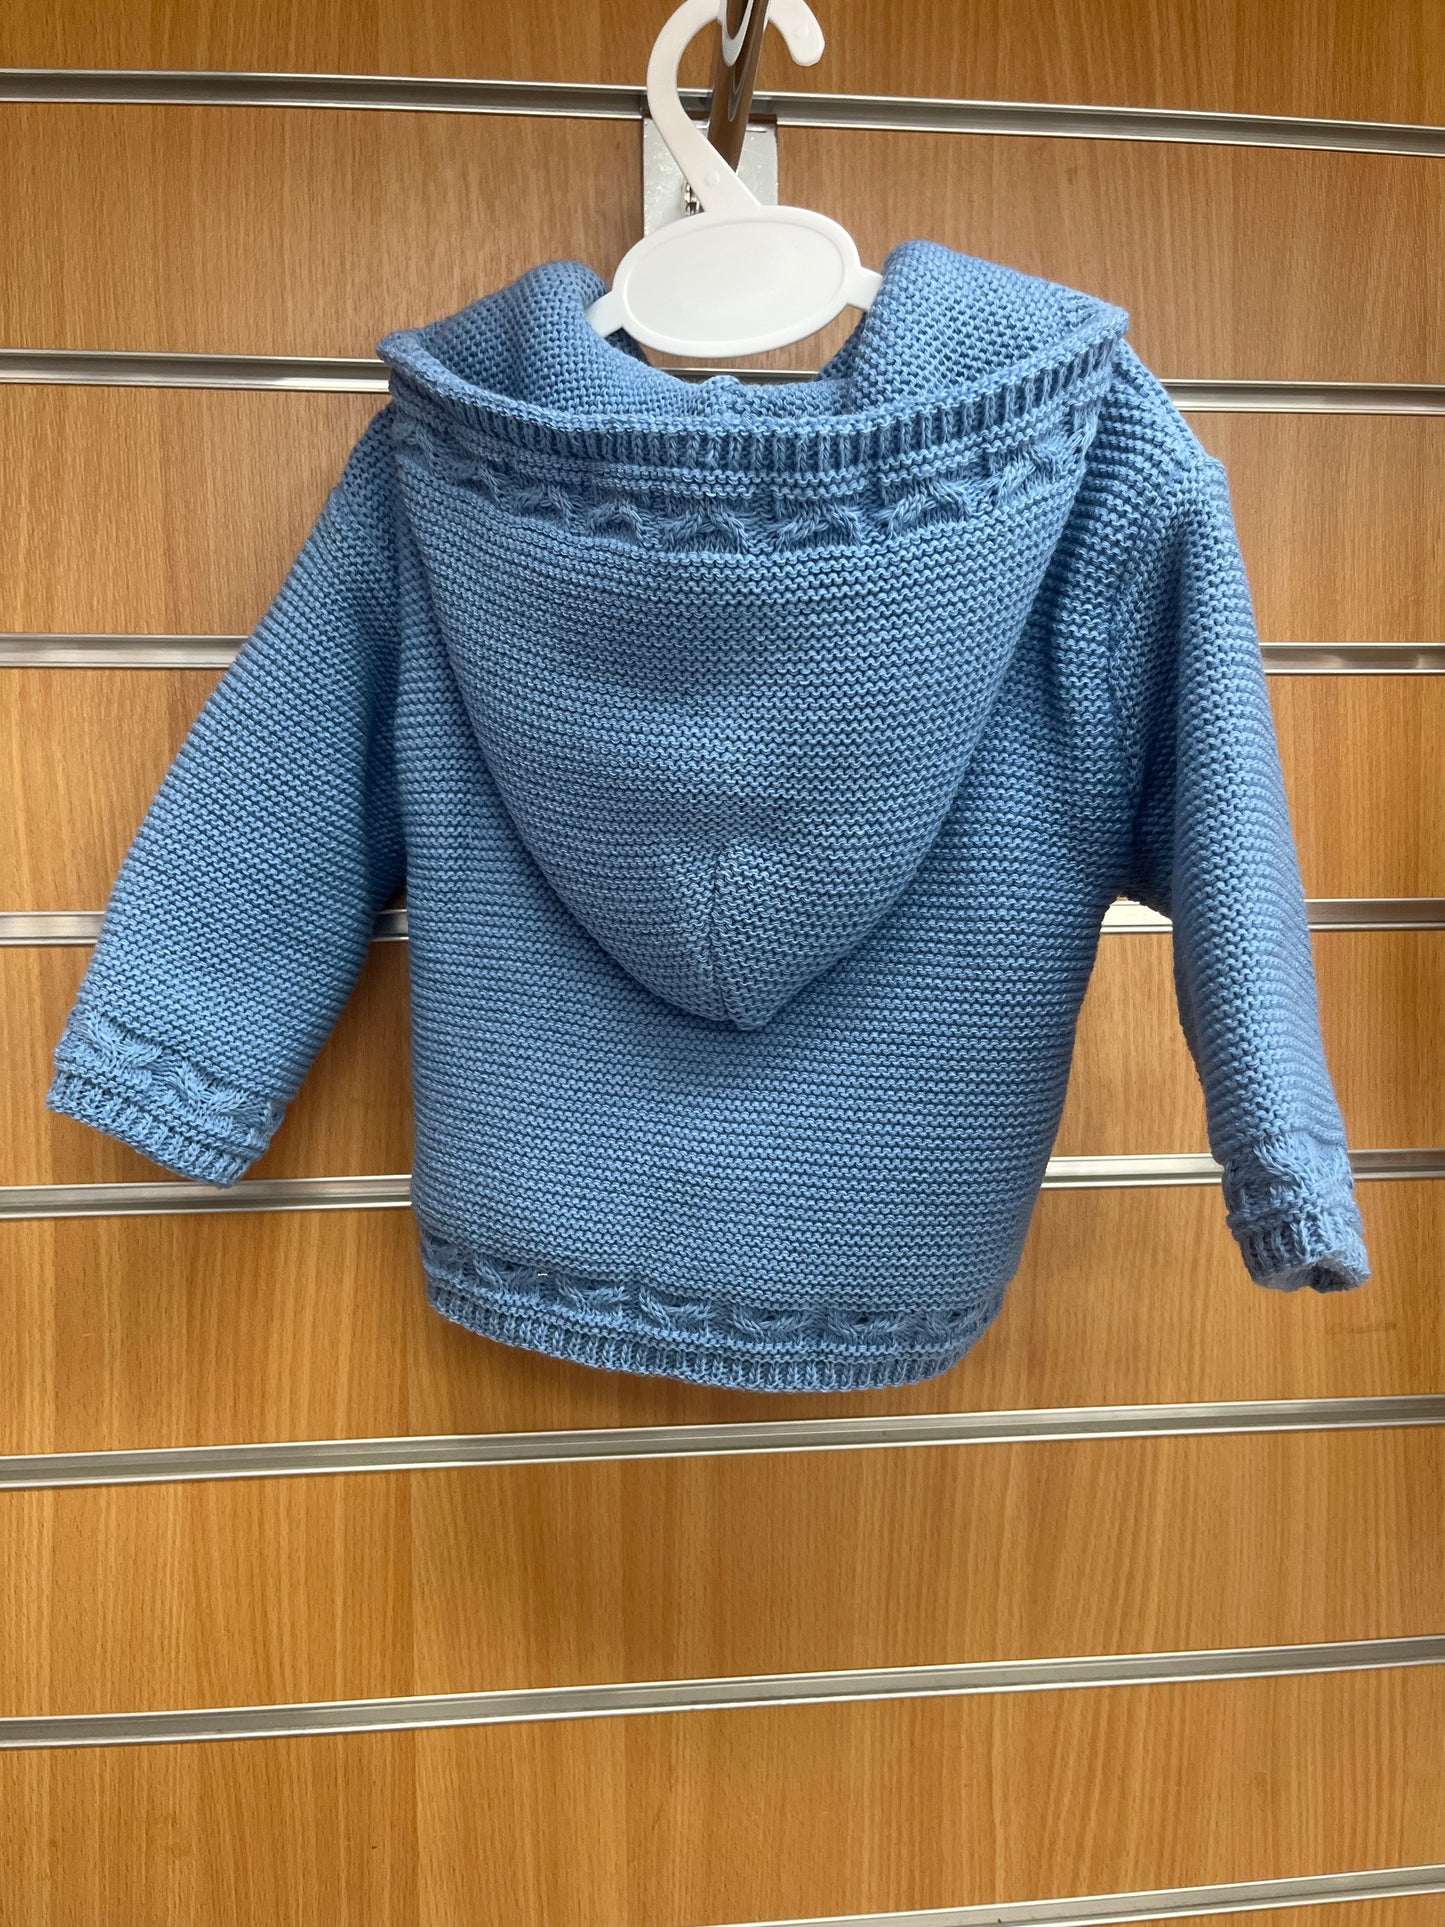 Steel Blue knitted pram coat